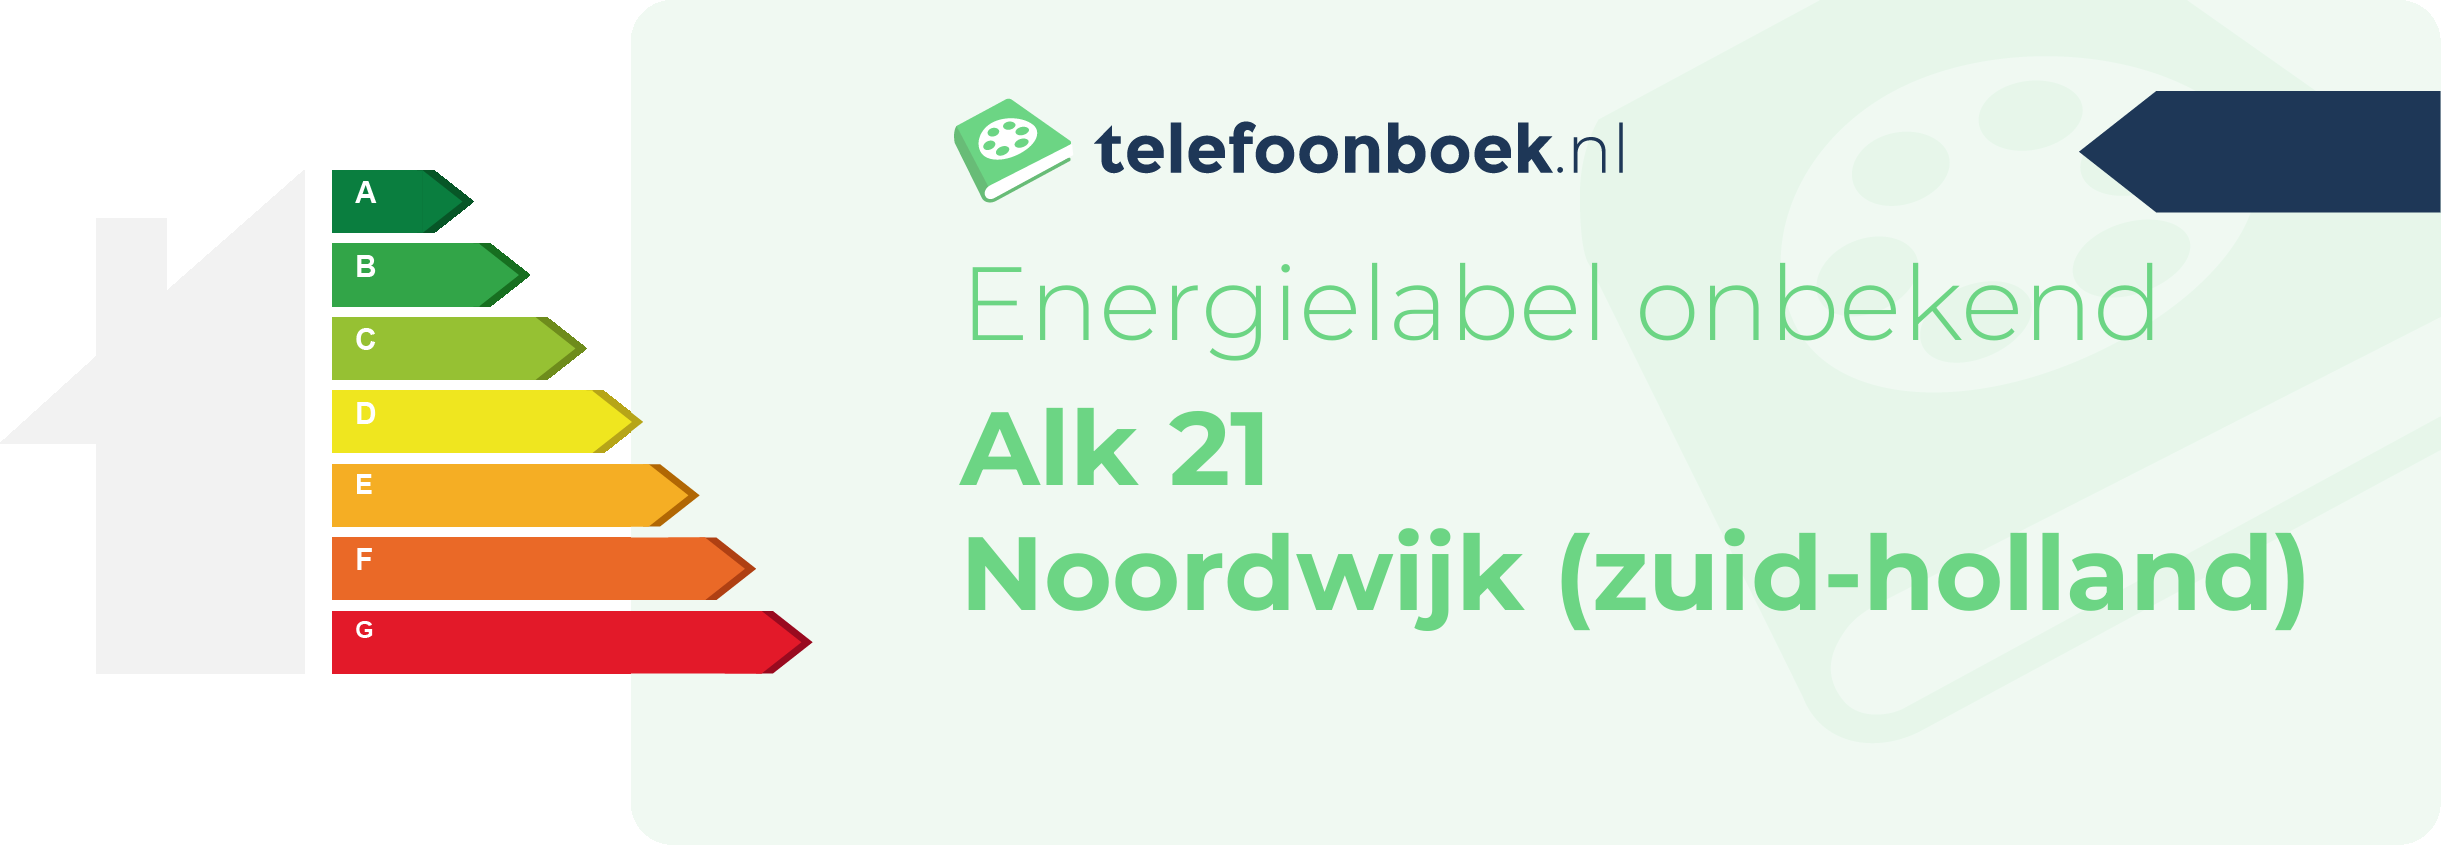 Energielabel Alk 21 Noordwijk (Zuid-Holland)